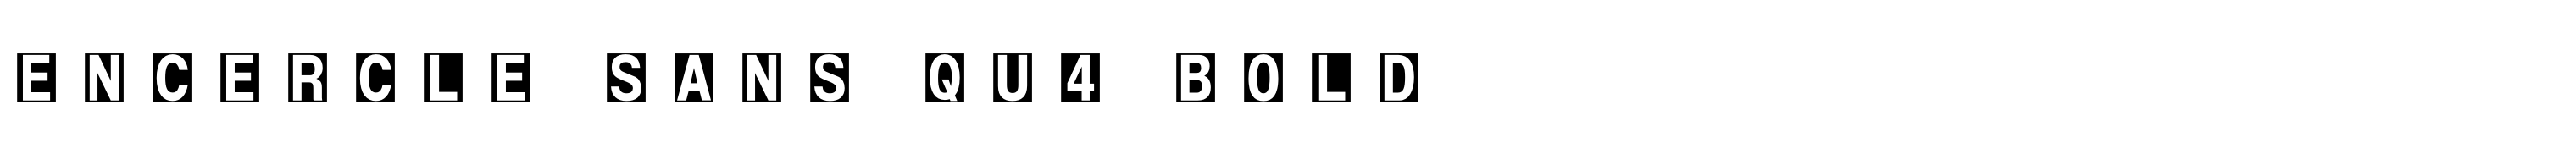 Encercle Sans Qu4 Bold